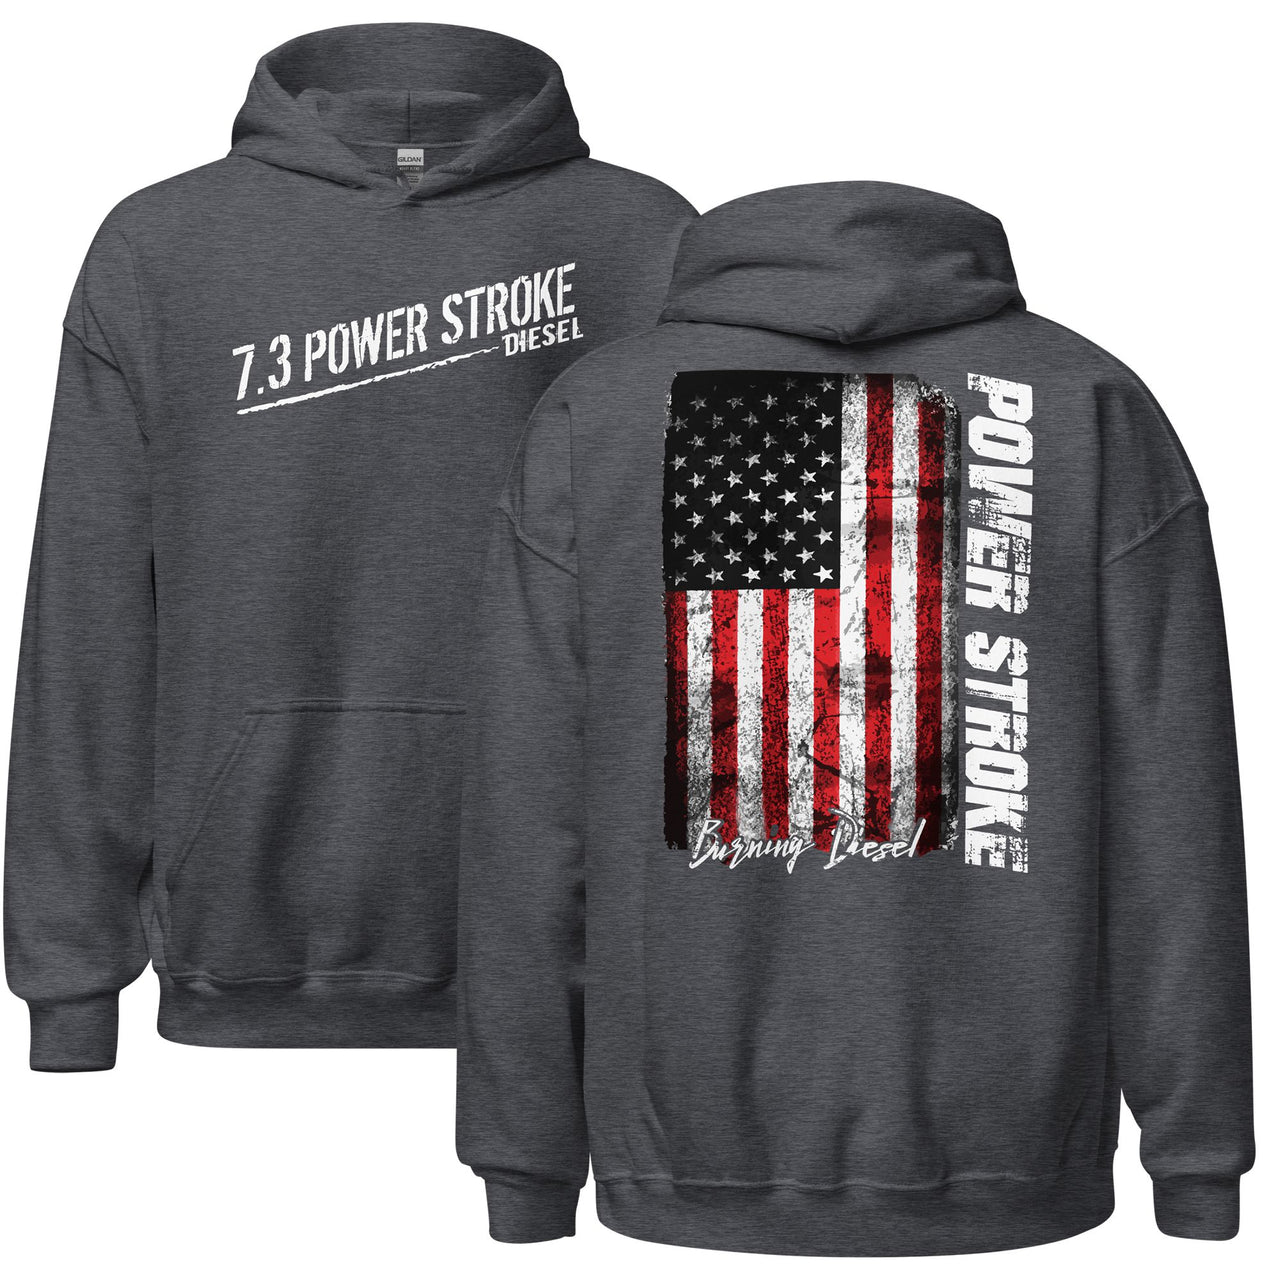 7.3 Power Stroke Diesel Hoodie, American Flag Sweatshirt in grey